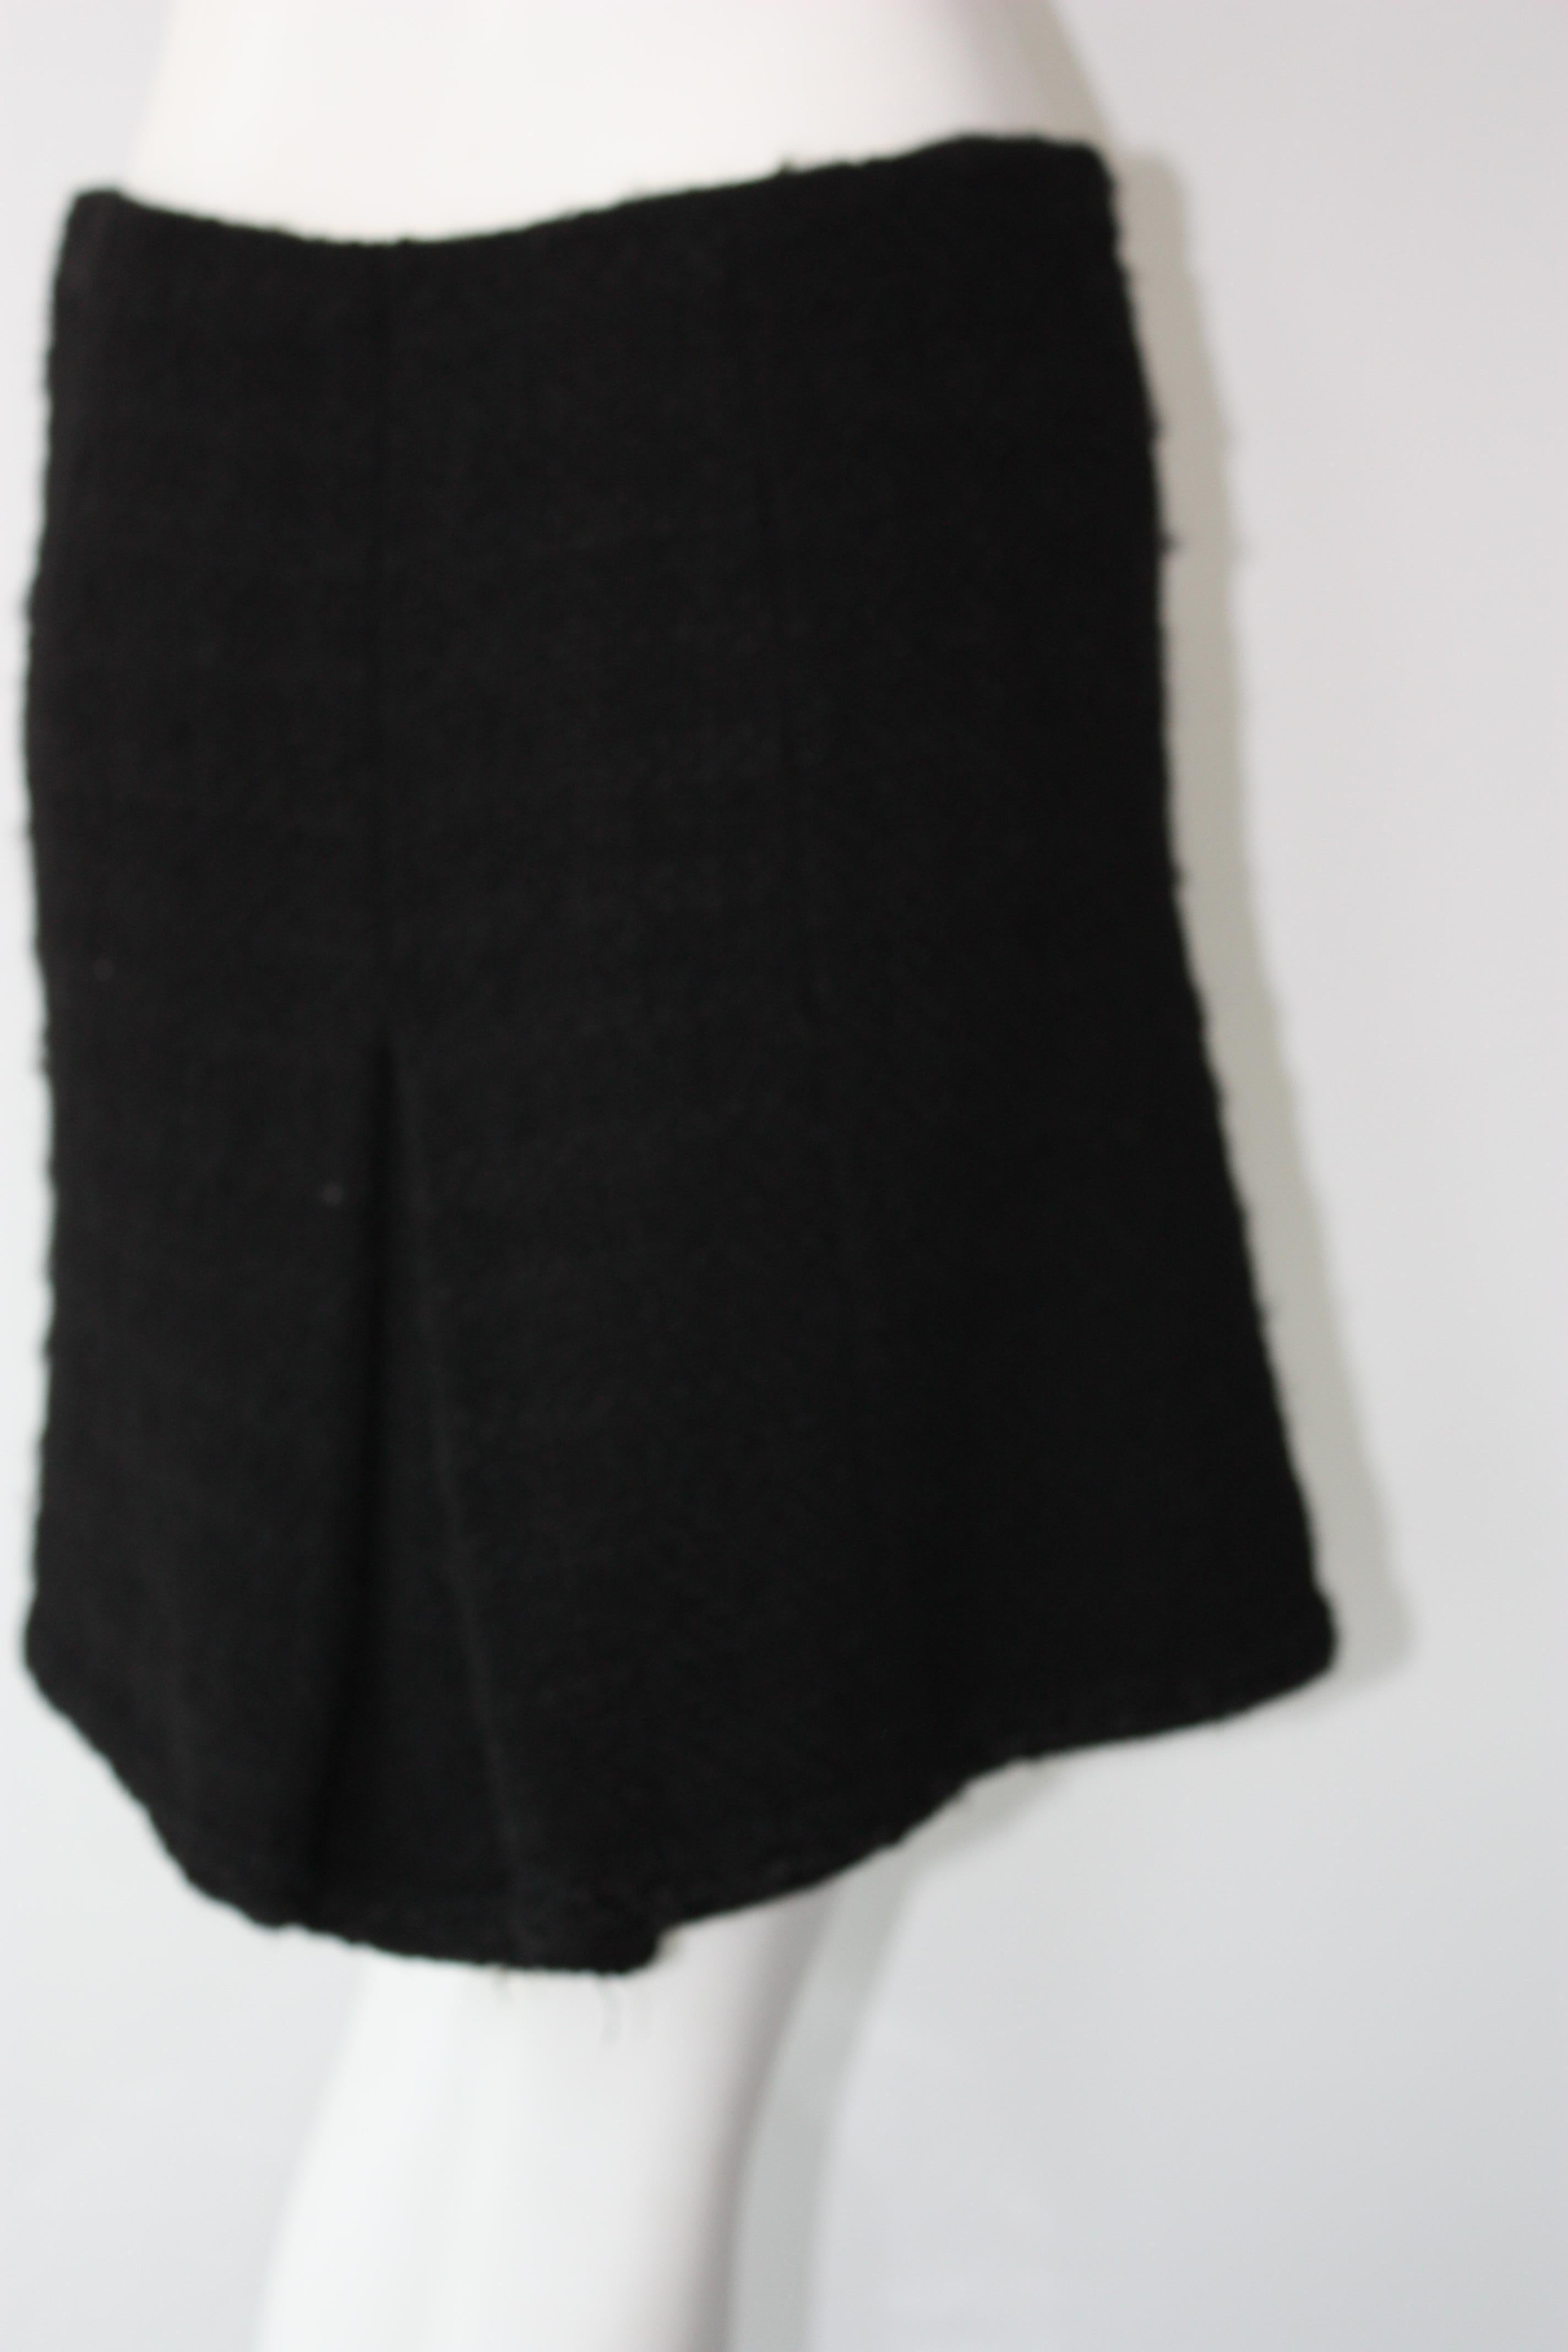 chanel black skirt